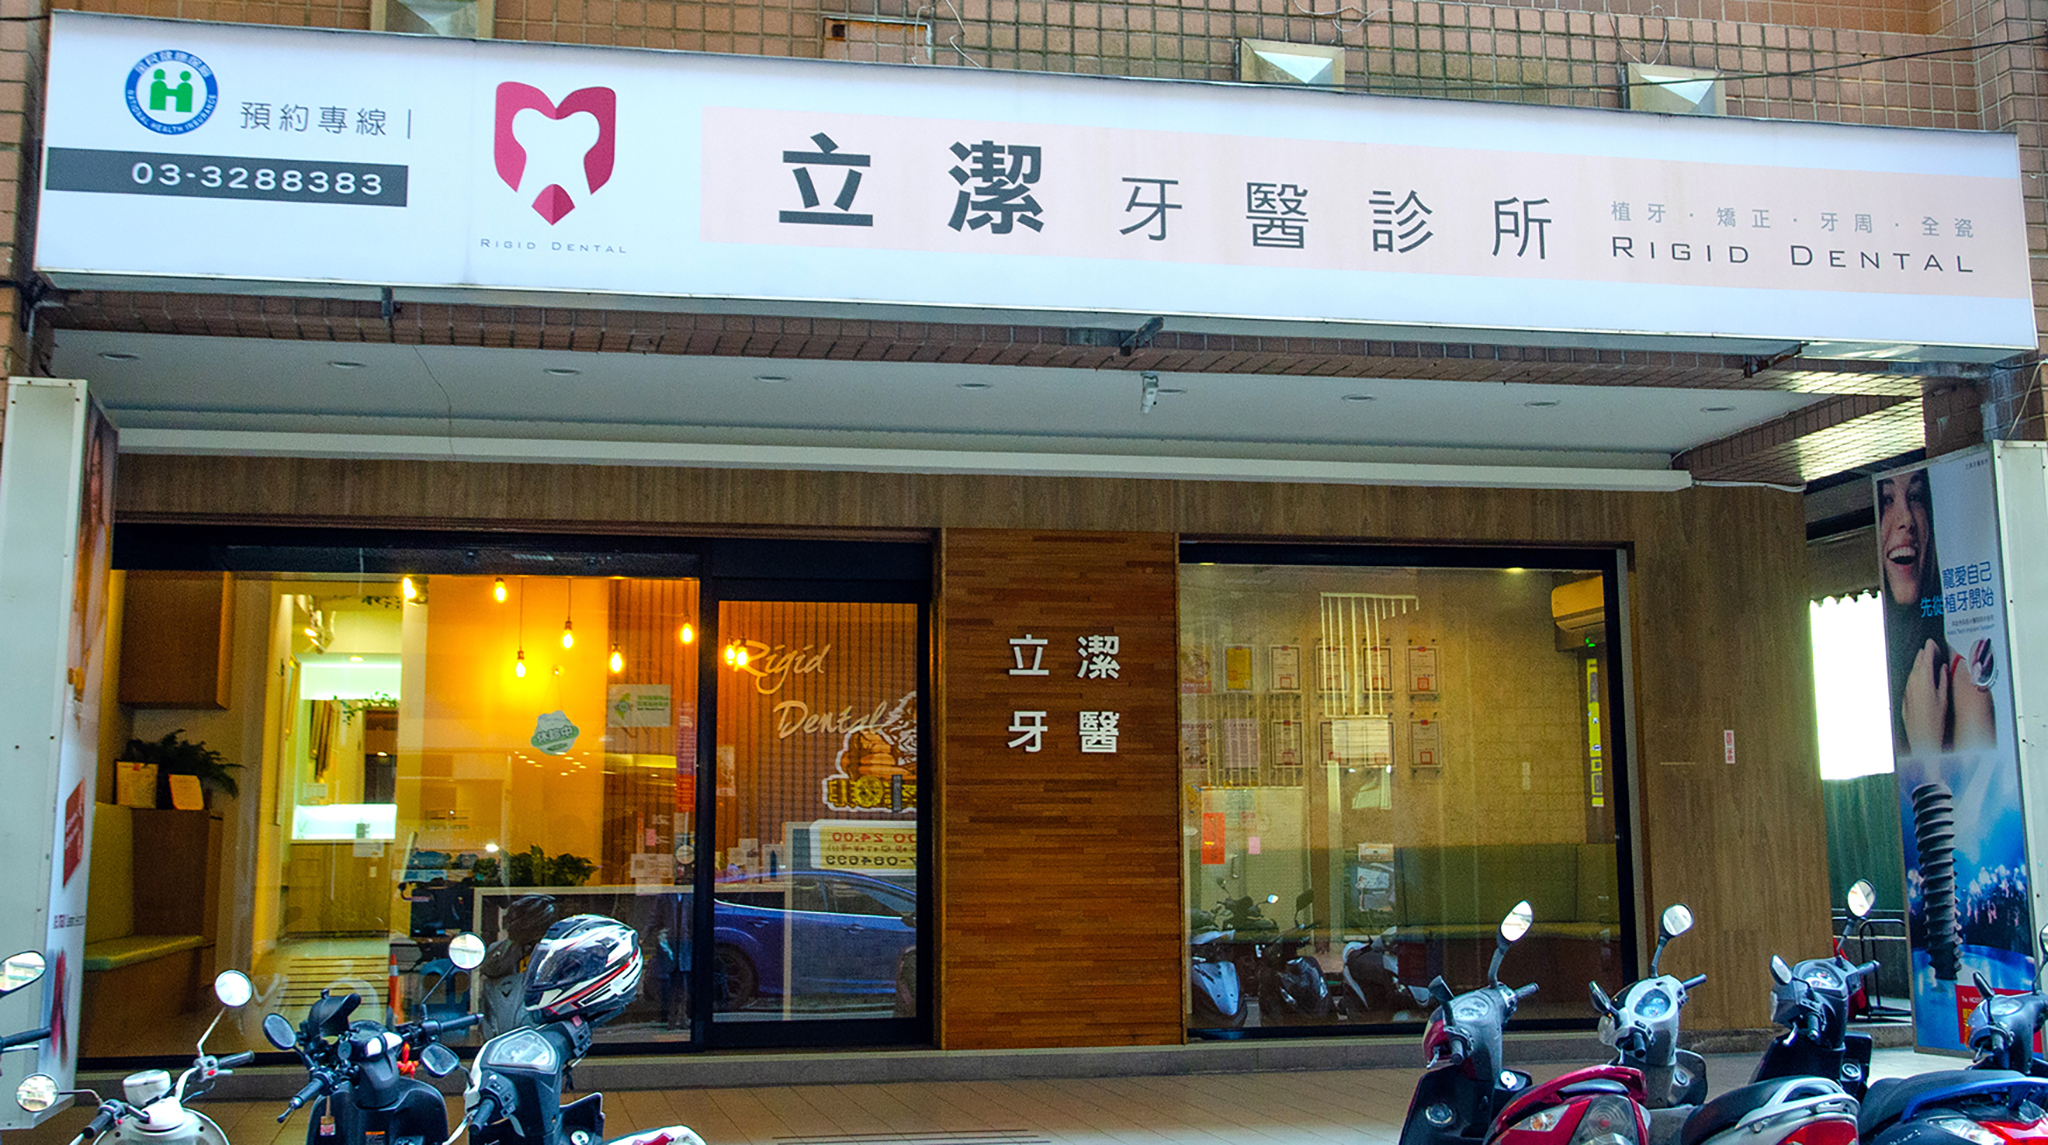 立潔牙醫診所位於桃園市龜山區文化二路。